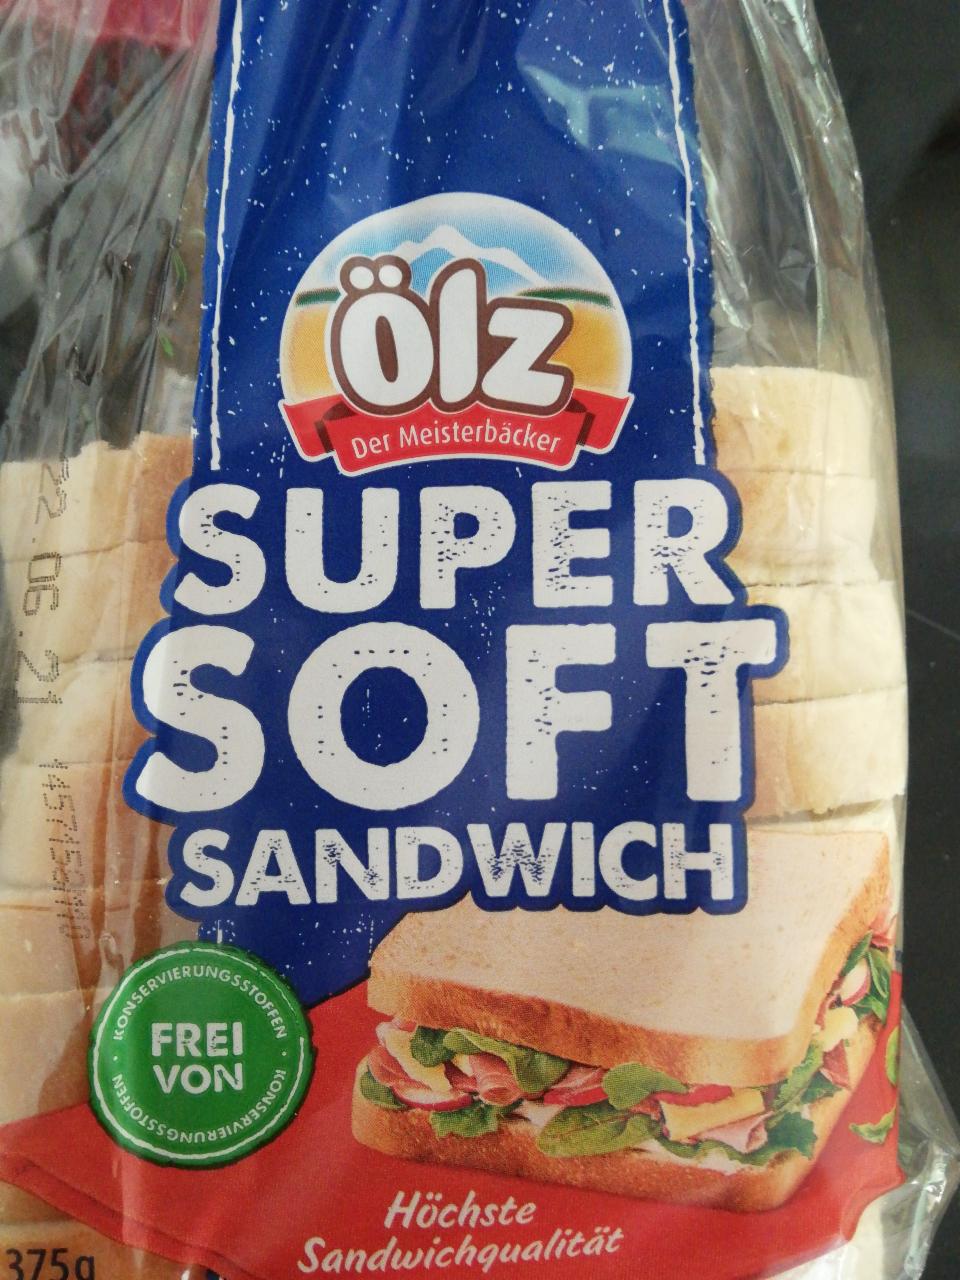 Fotografie - Super soft sandwich Ölz weizenbrot